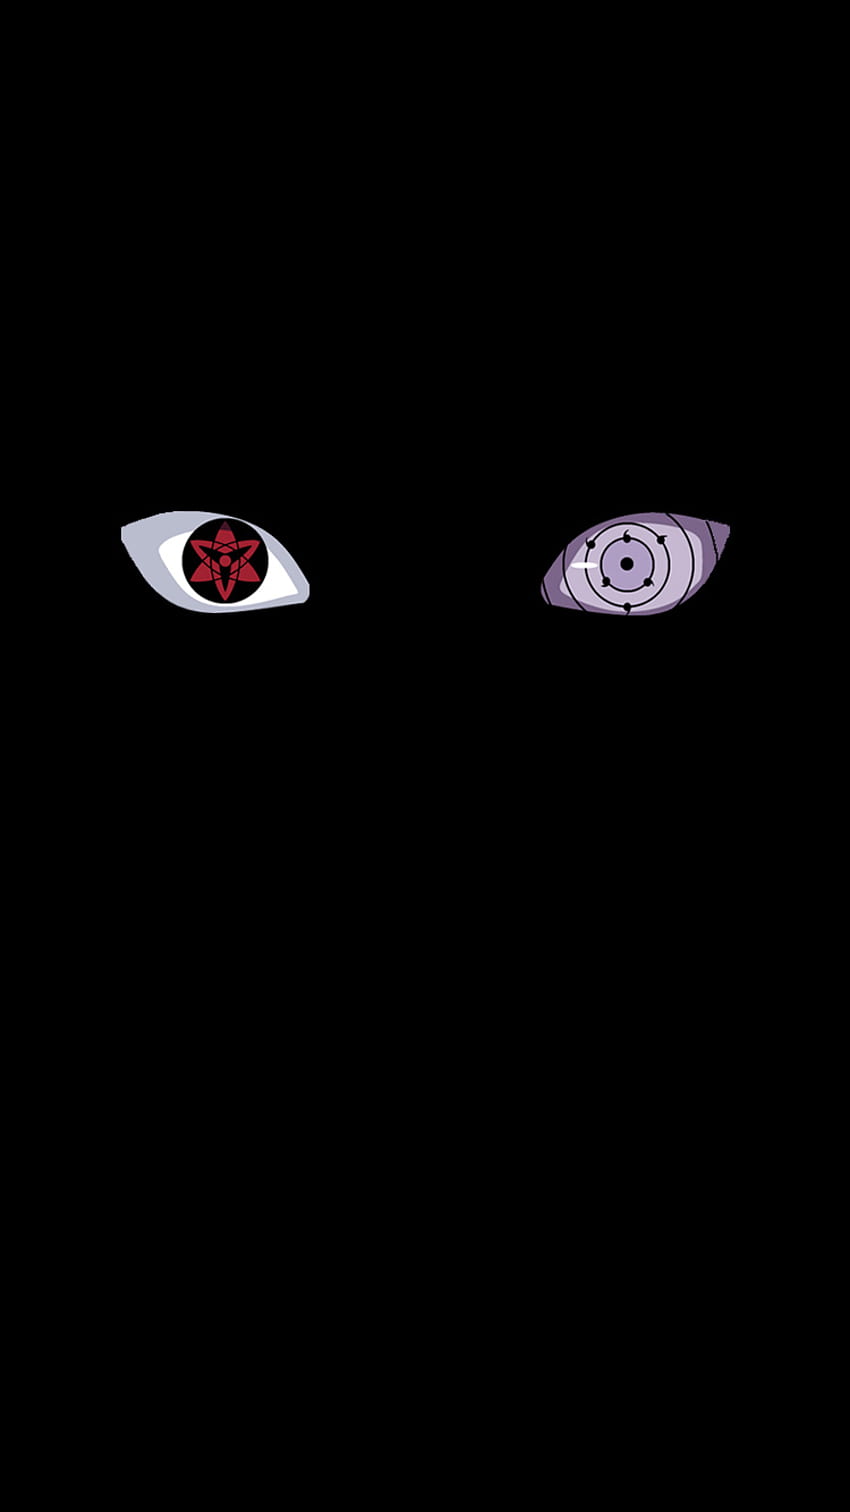 Sasuke Rinnegan eye, sharingan, sasuke Sharingan, sasuke eyes, sasuke eye, sasuke Rinnegan HD phone wallpaper